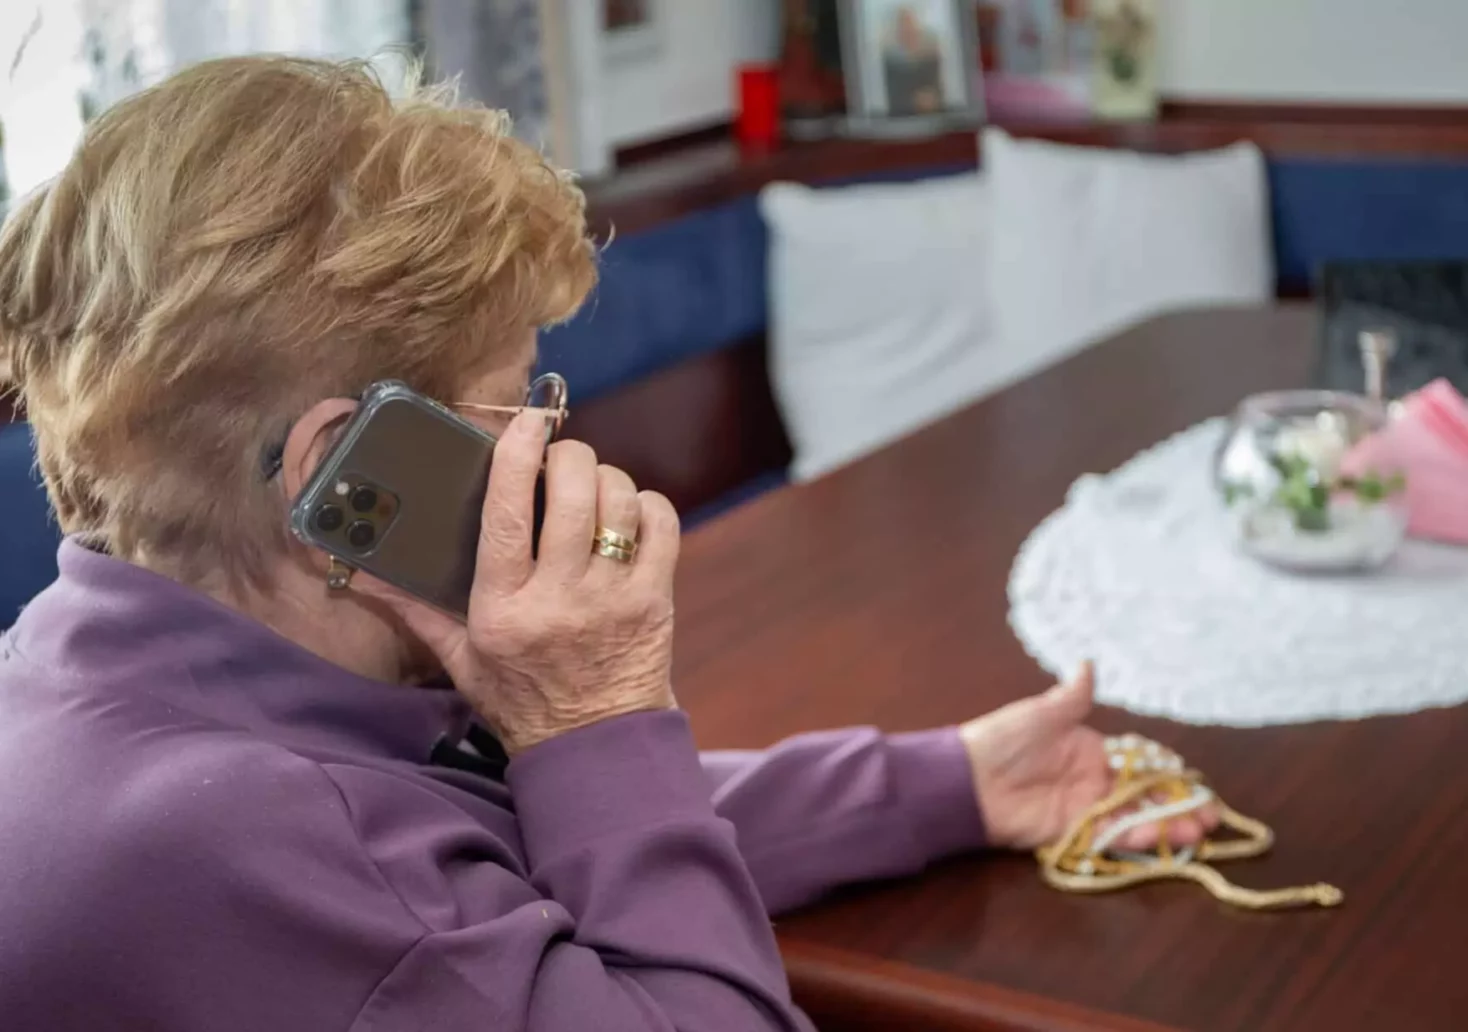 Bild auf 5min.at zeigt eine ältere Dame am Telefon.